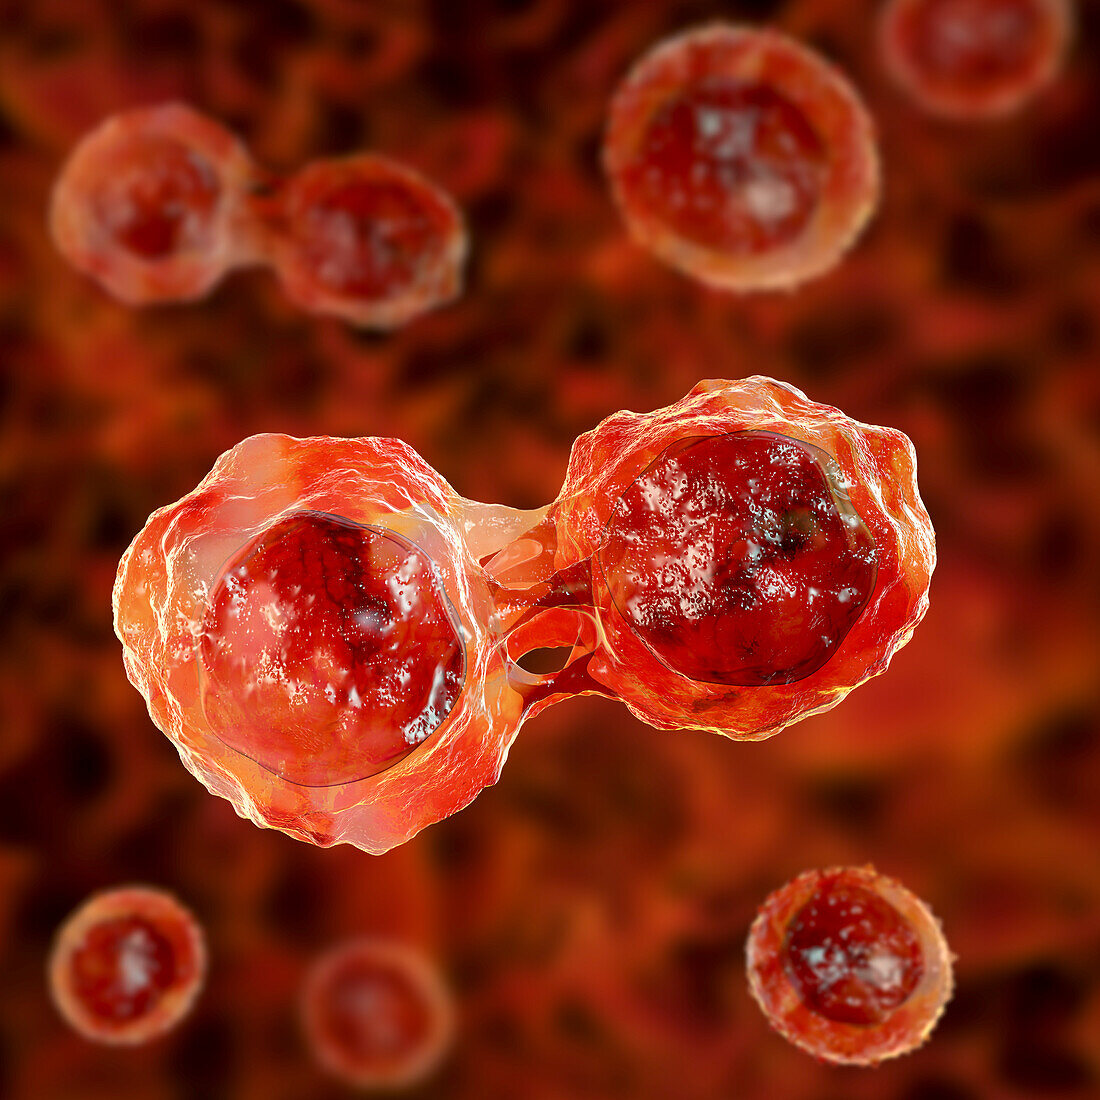 Stem cells, illustration